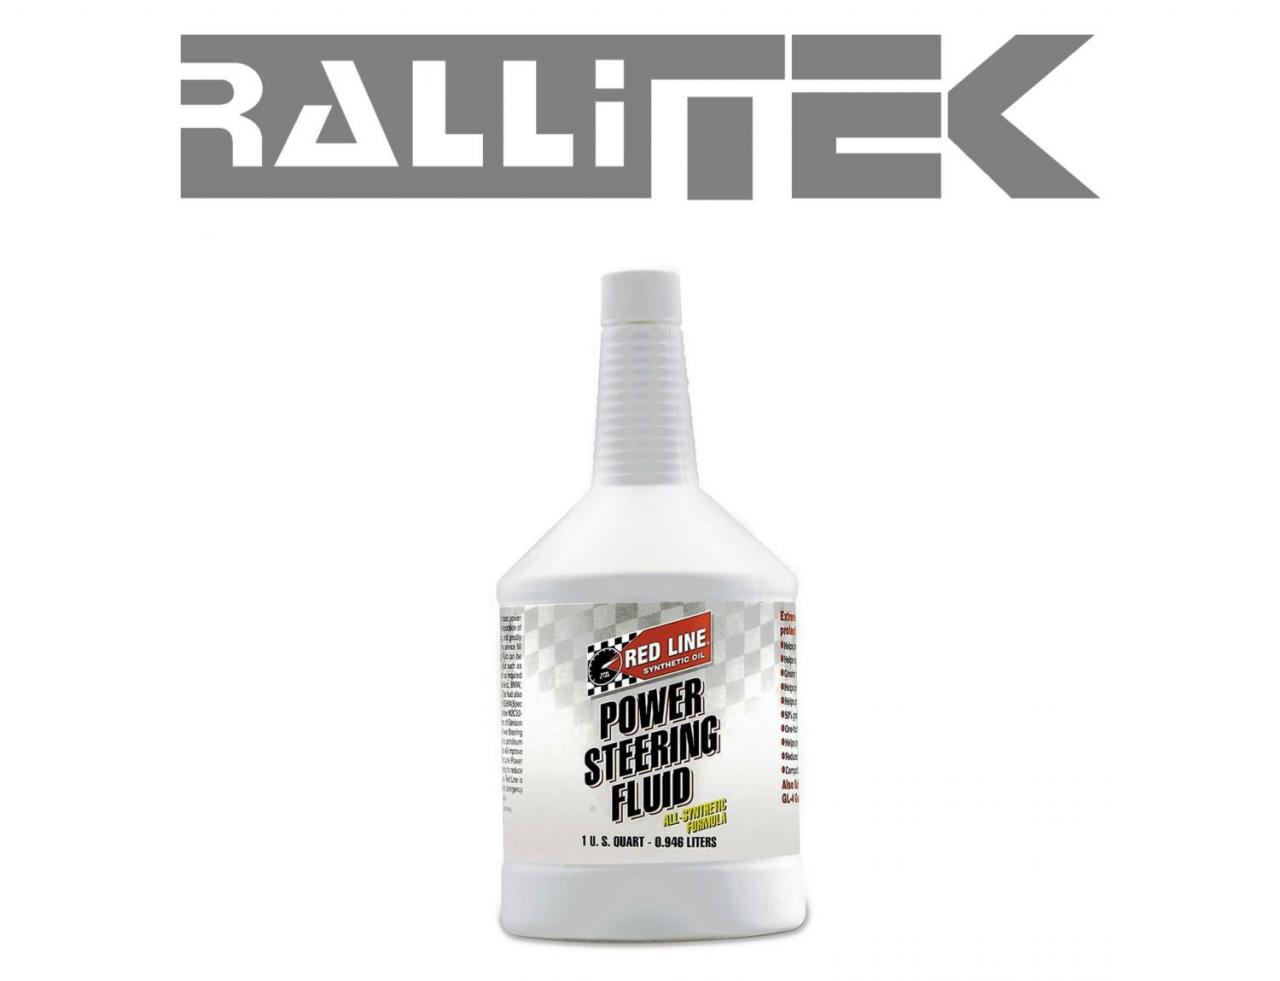 Red Line Power Steering Fluid 1 Quart | RalliTEK.com